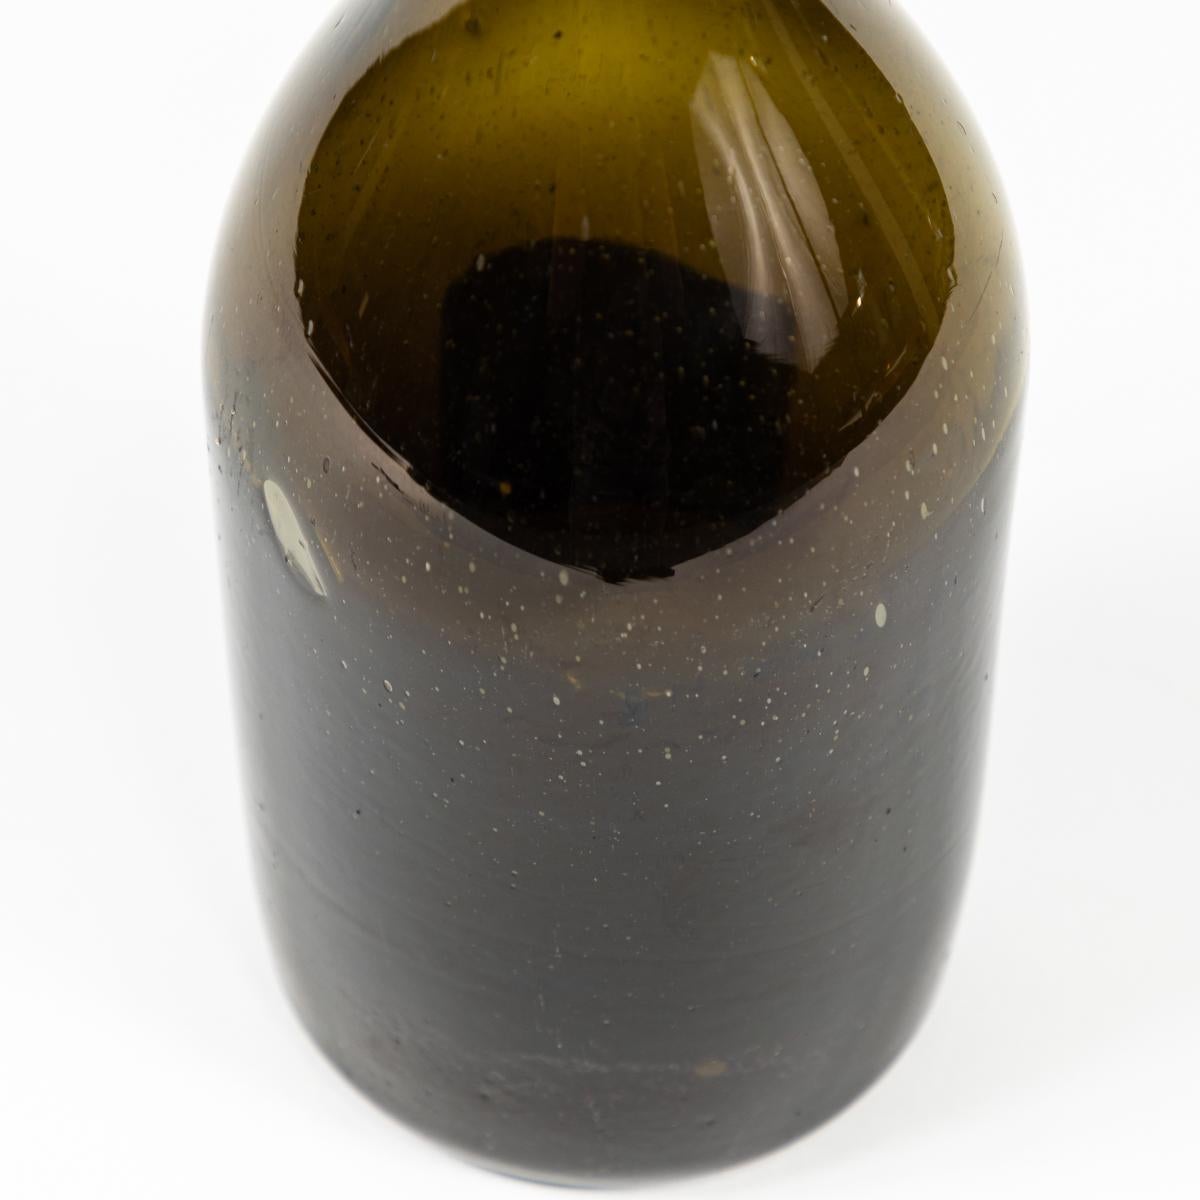 Französische Flasche aus mundgeblasenem Glas aus dem 19. Jahrhundert in einem schönen tiefen Olivton. Dieses rustikale und handwerklich gefertigte Objekt ist vielseitig einsetzbar - als Dekanter, als Vase oder in Kombination mit anderen Flaschen, um